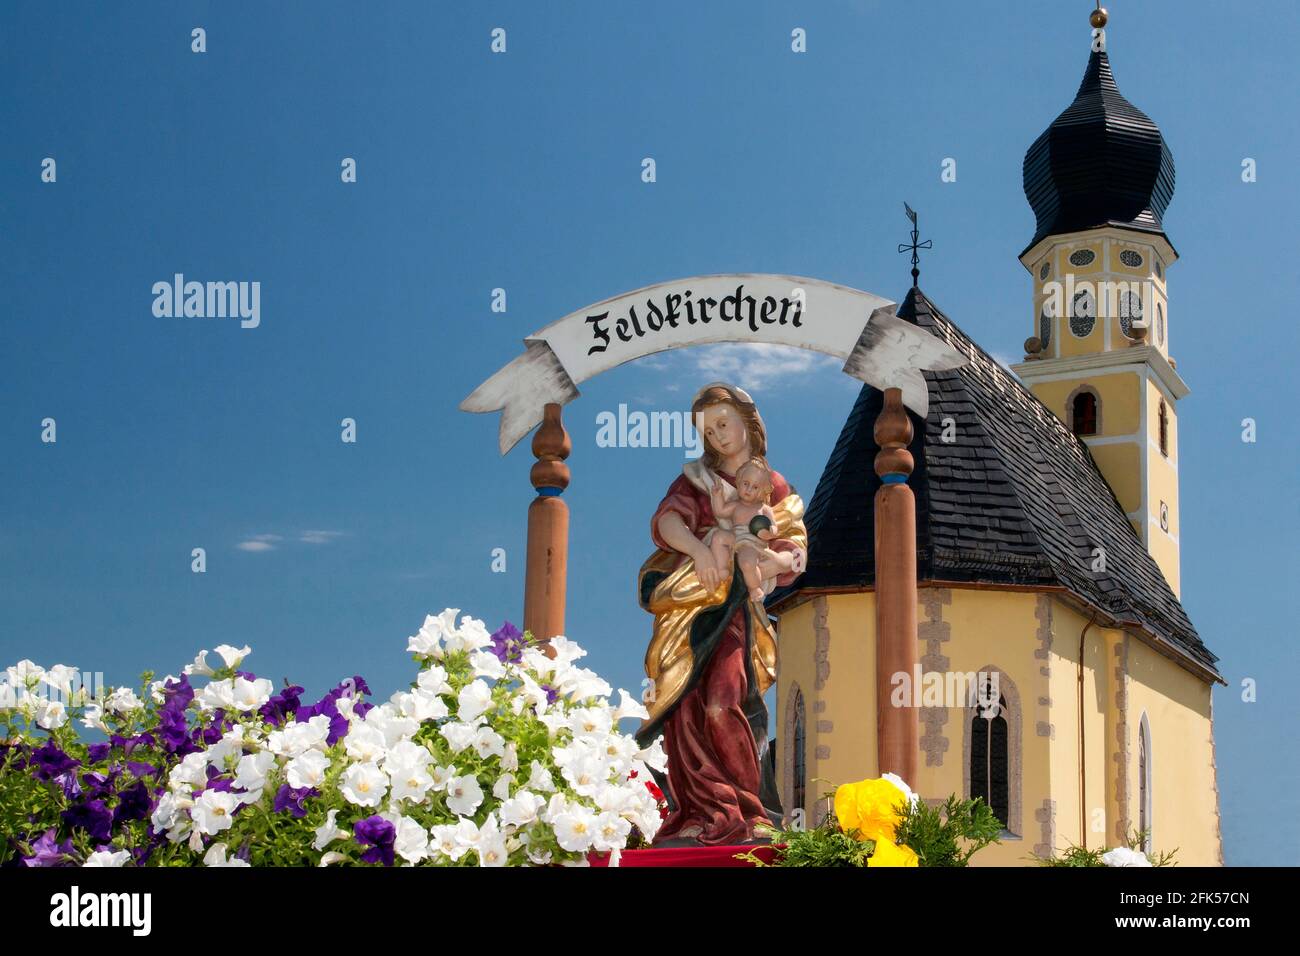 90jähriges Jubiläum des Trachtenvereins Edelweiß Ainring-Hammerau die Pfarrkirche von Feldkirchen in Miniatur Stock Photo